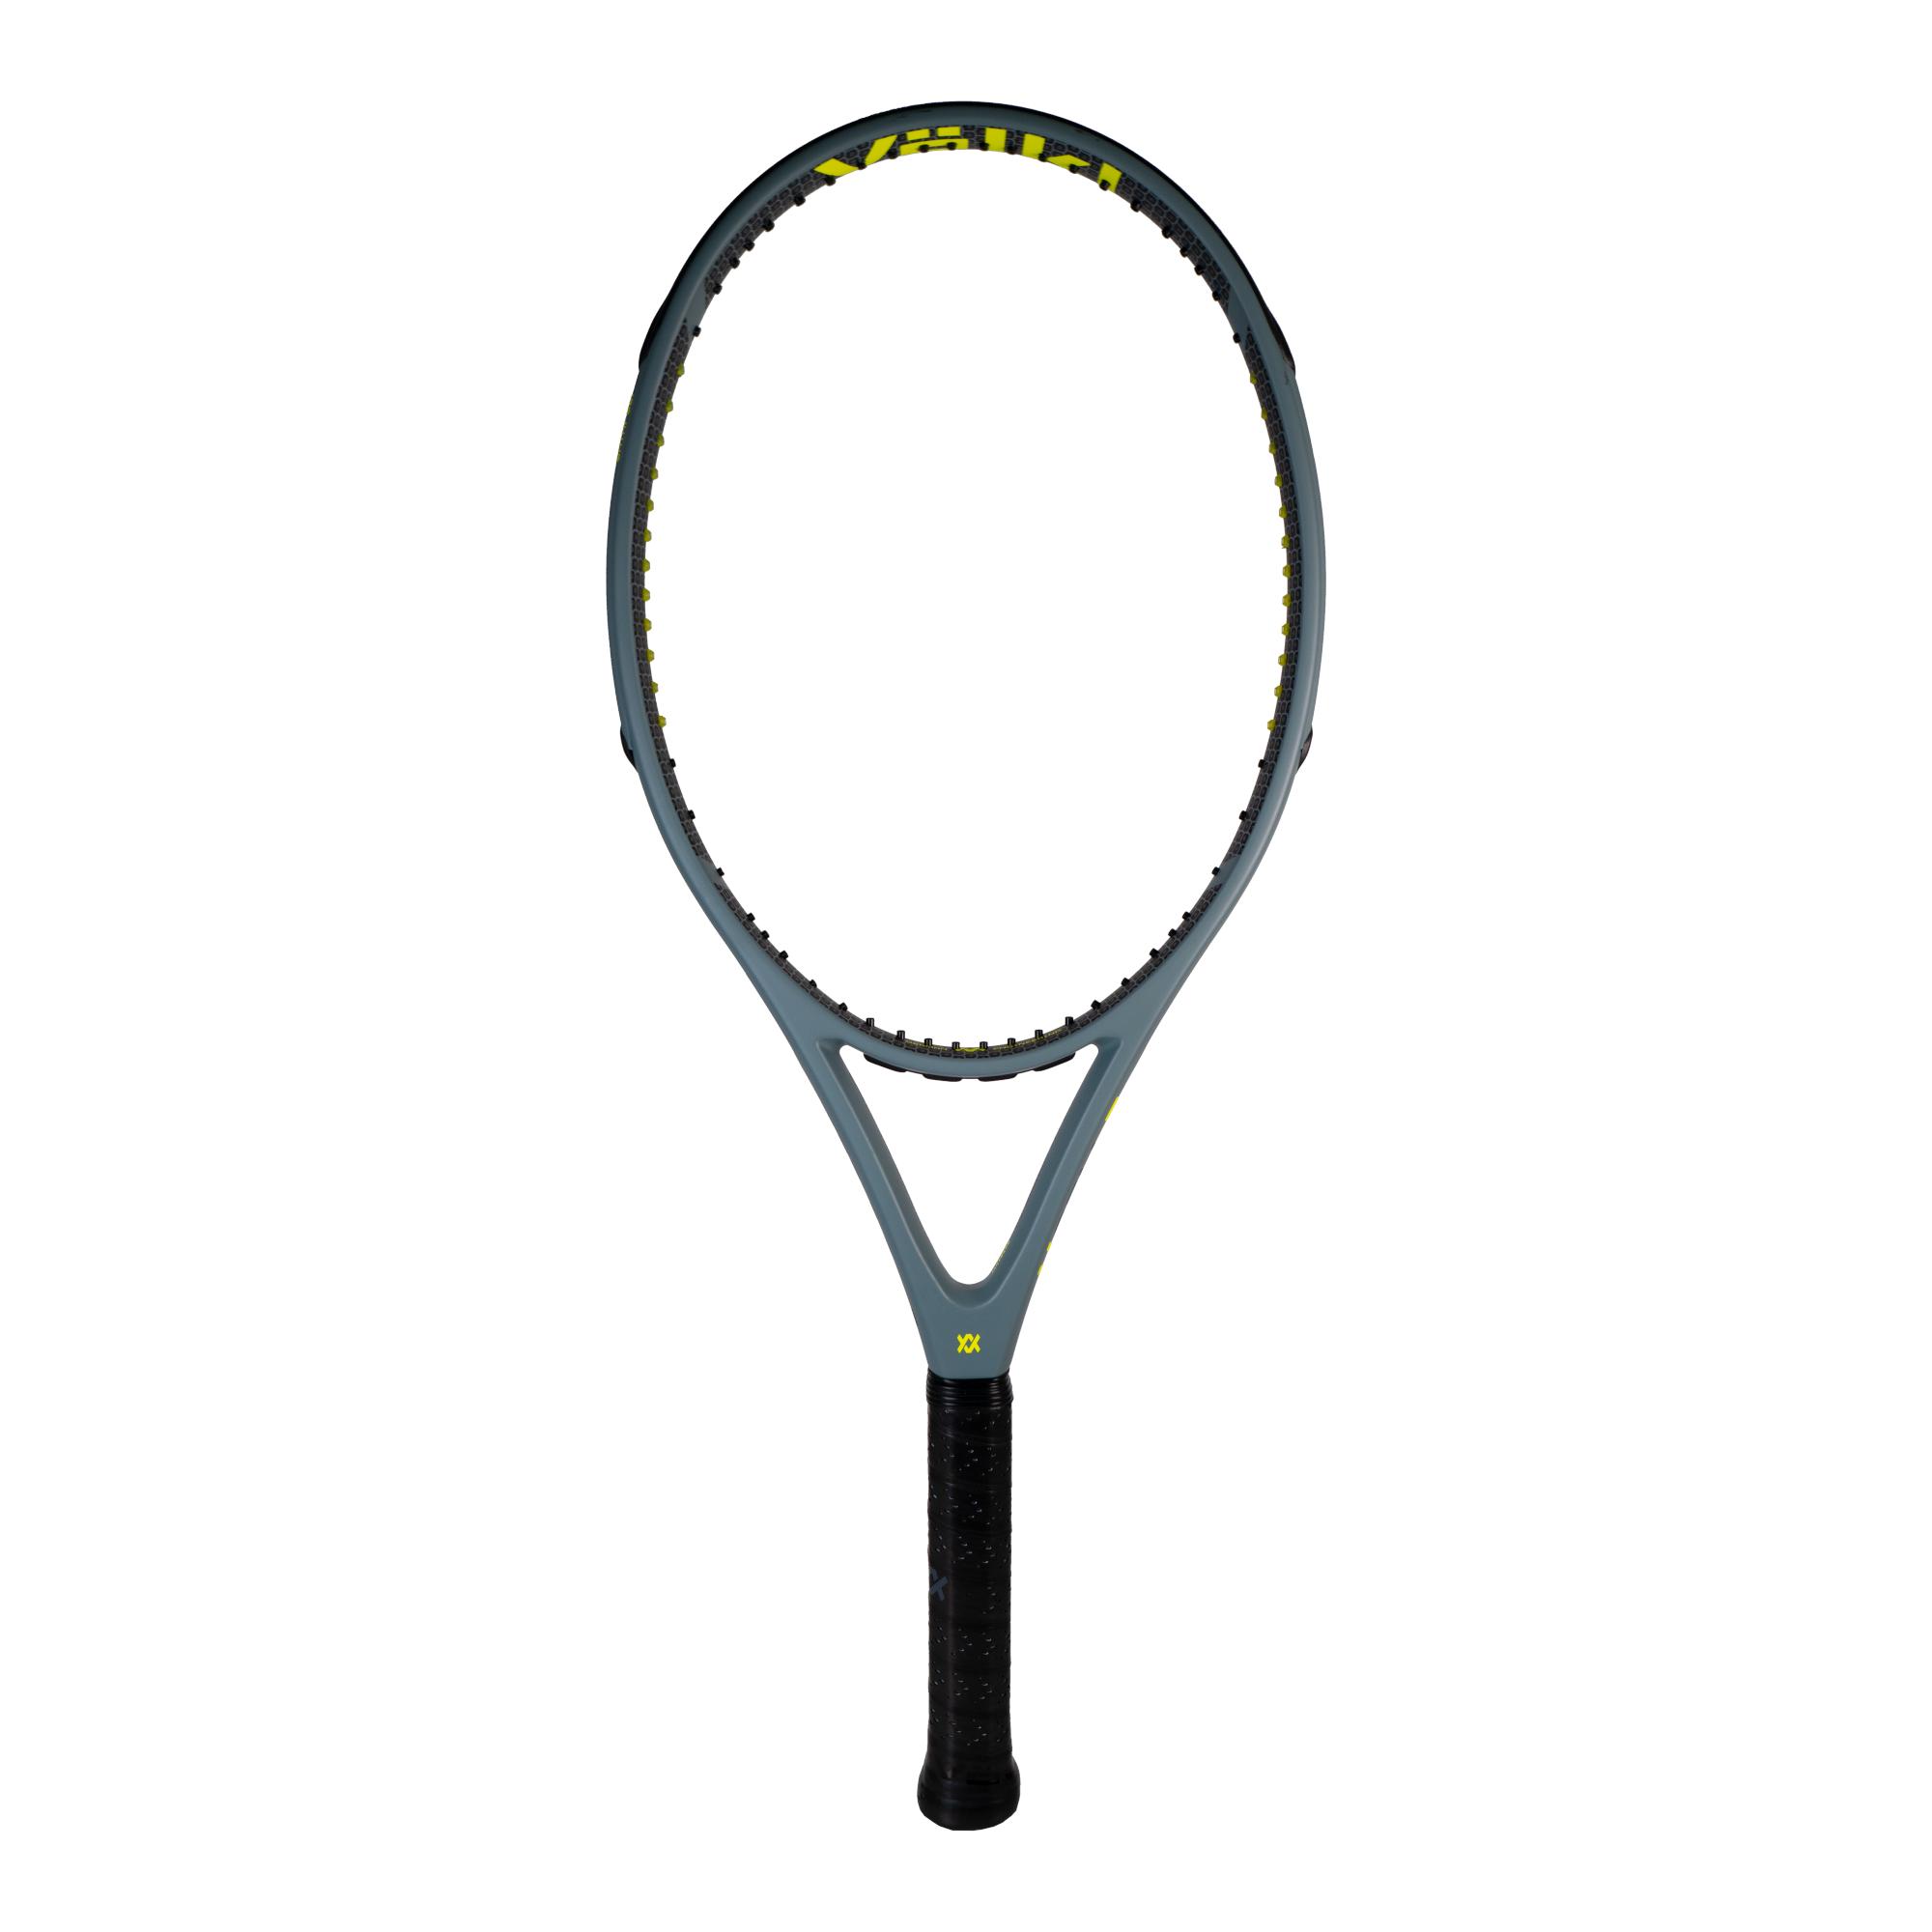 Volkl V-Cell 3 Tennis Racket